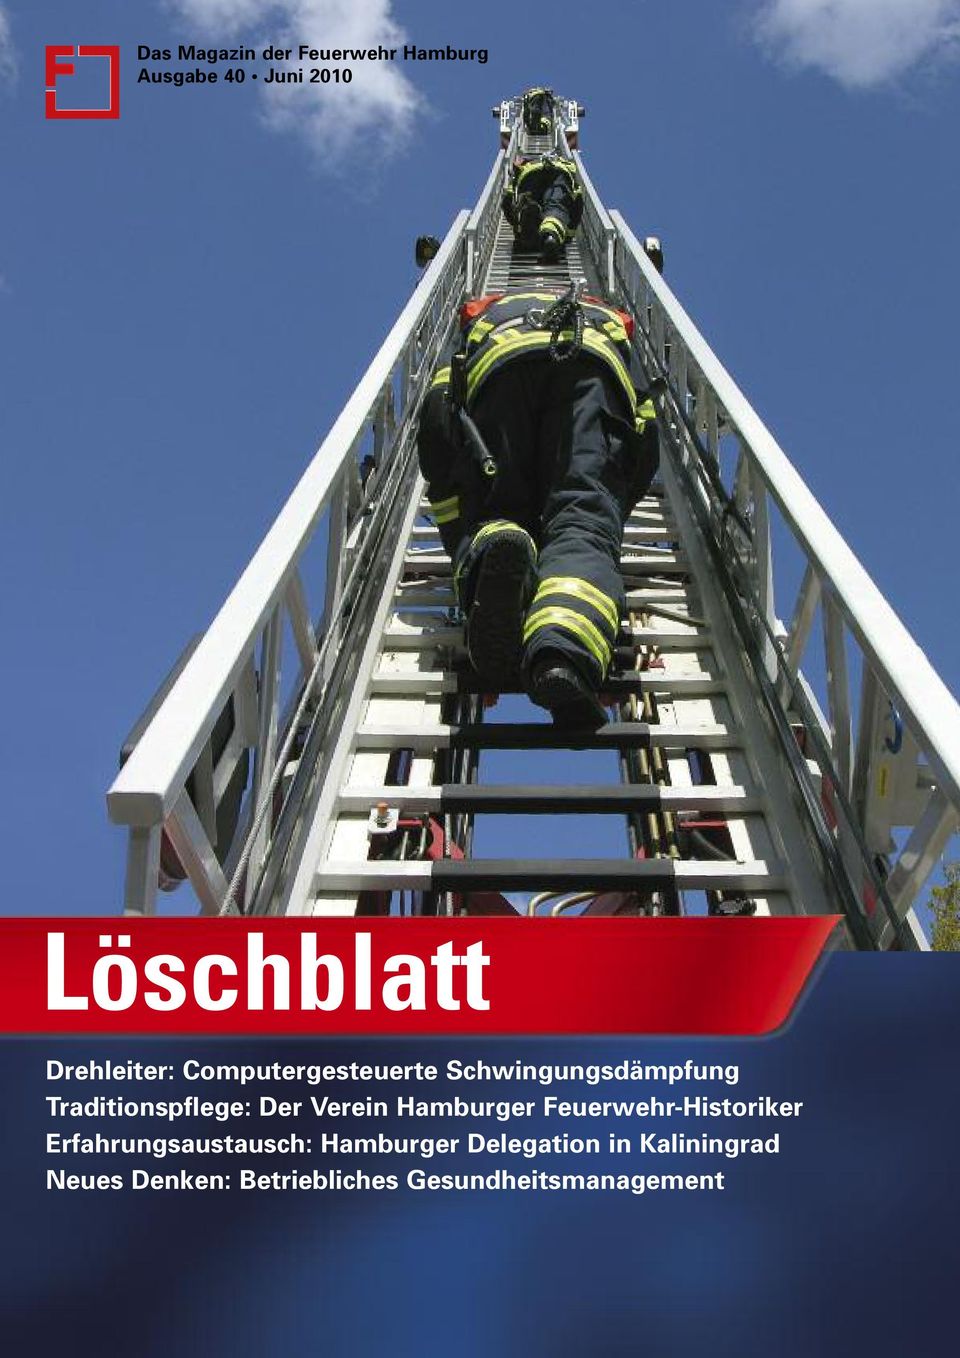 Der Verein Hamburger Feuerwehr-Historiker Erfahrungsaustausch: